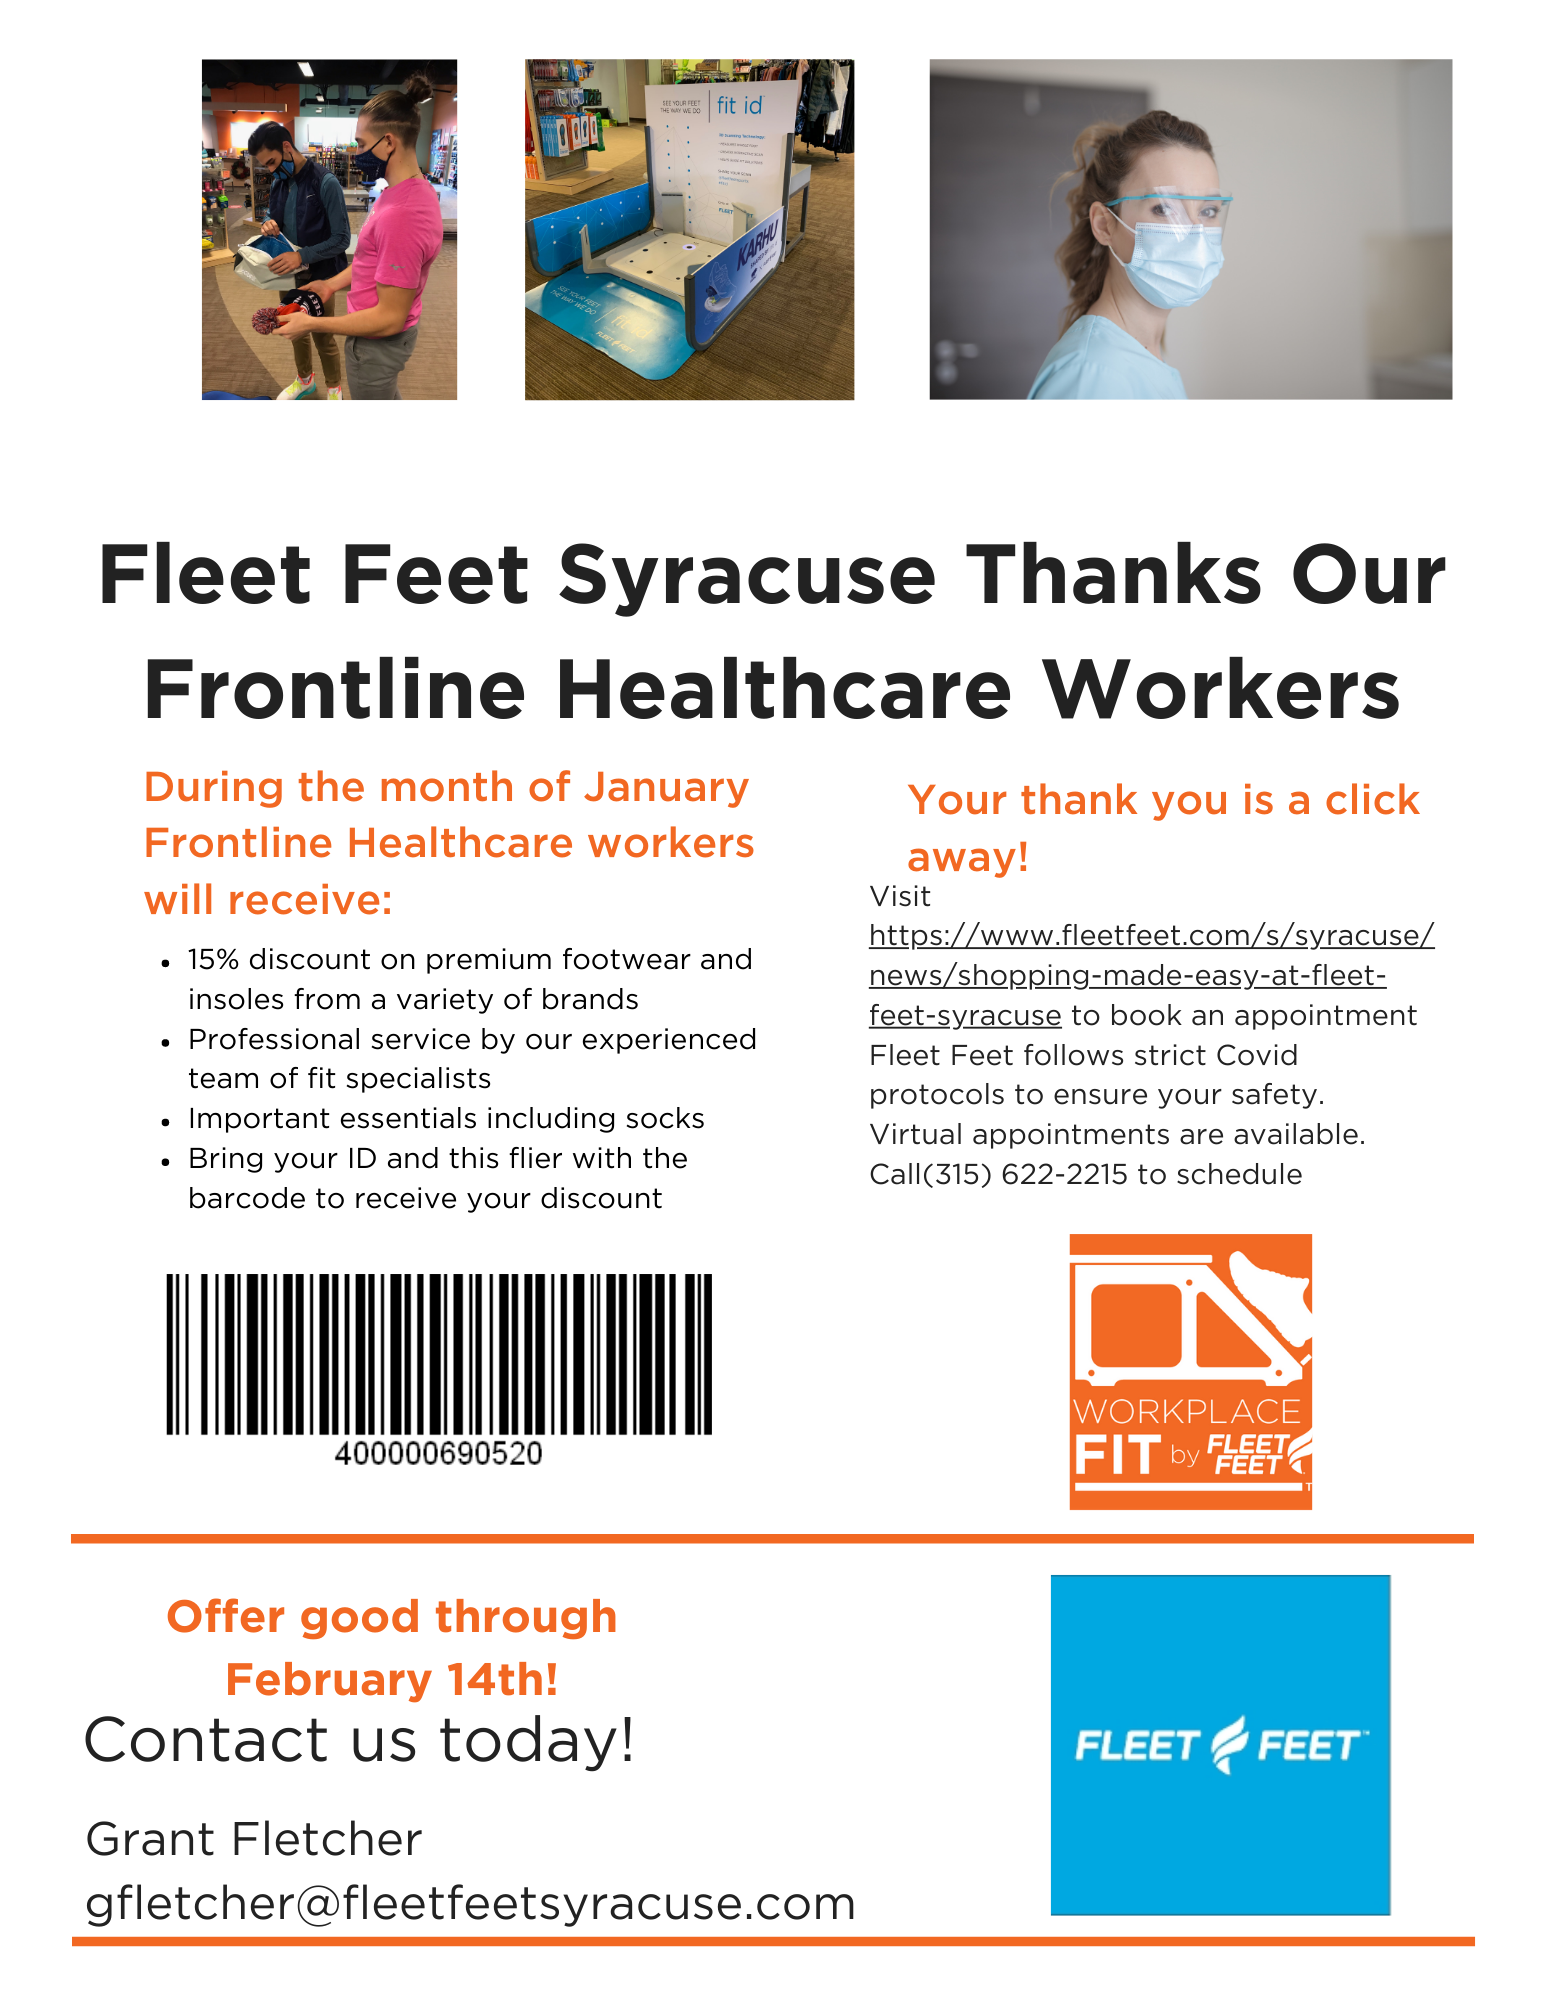 Frontline Healthcare workers shoe discount